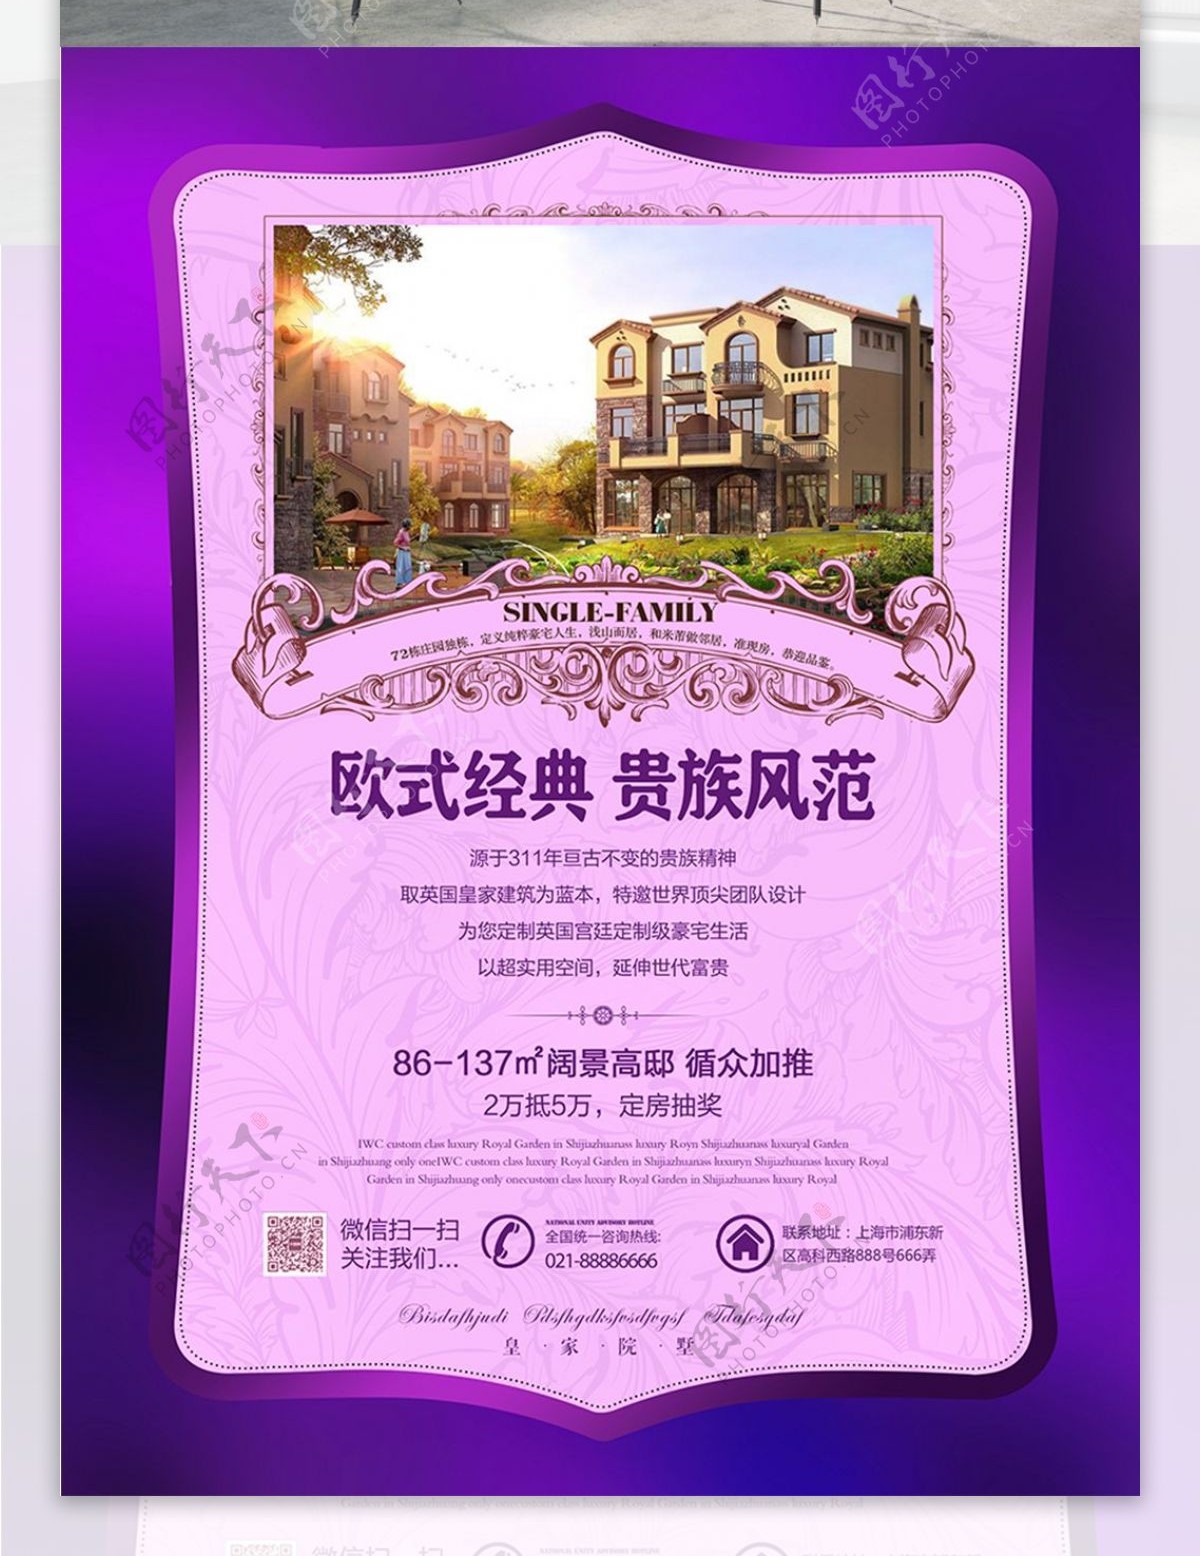 紫色奢华欧式楼盘销售宣传海报设计